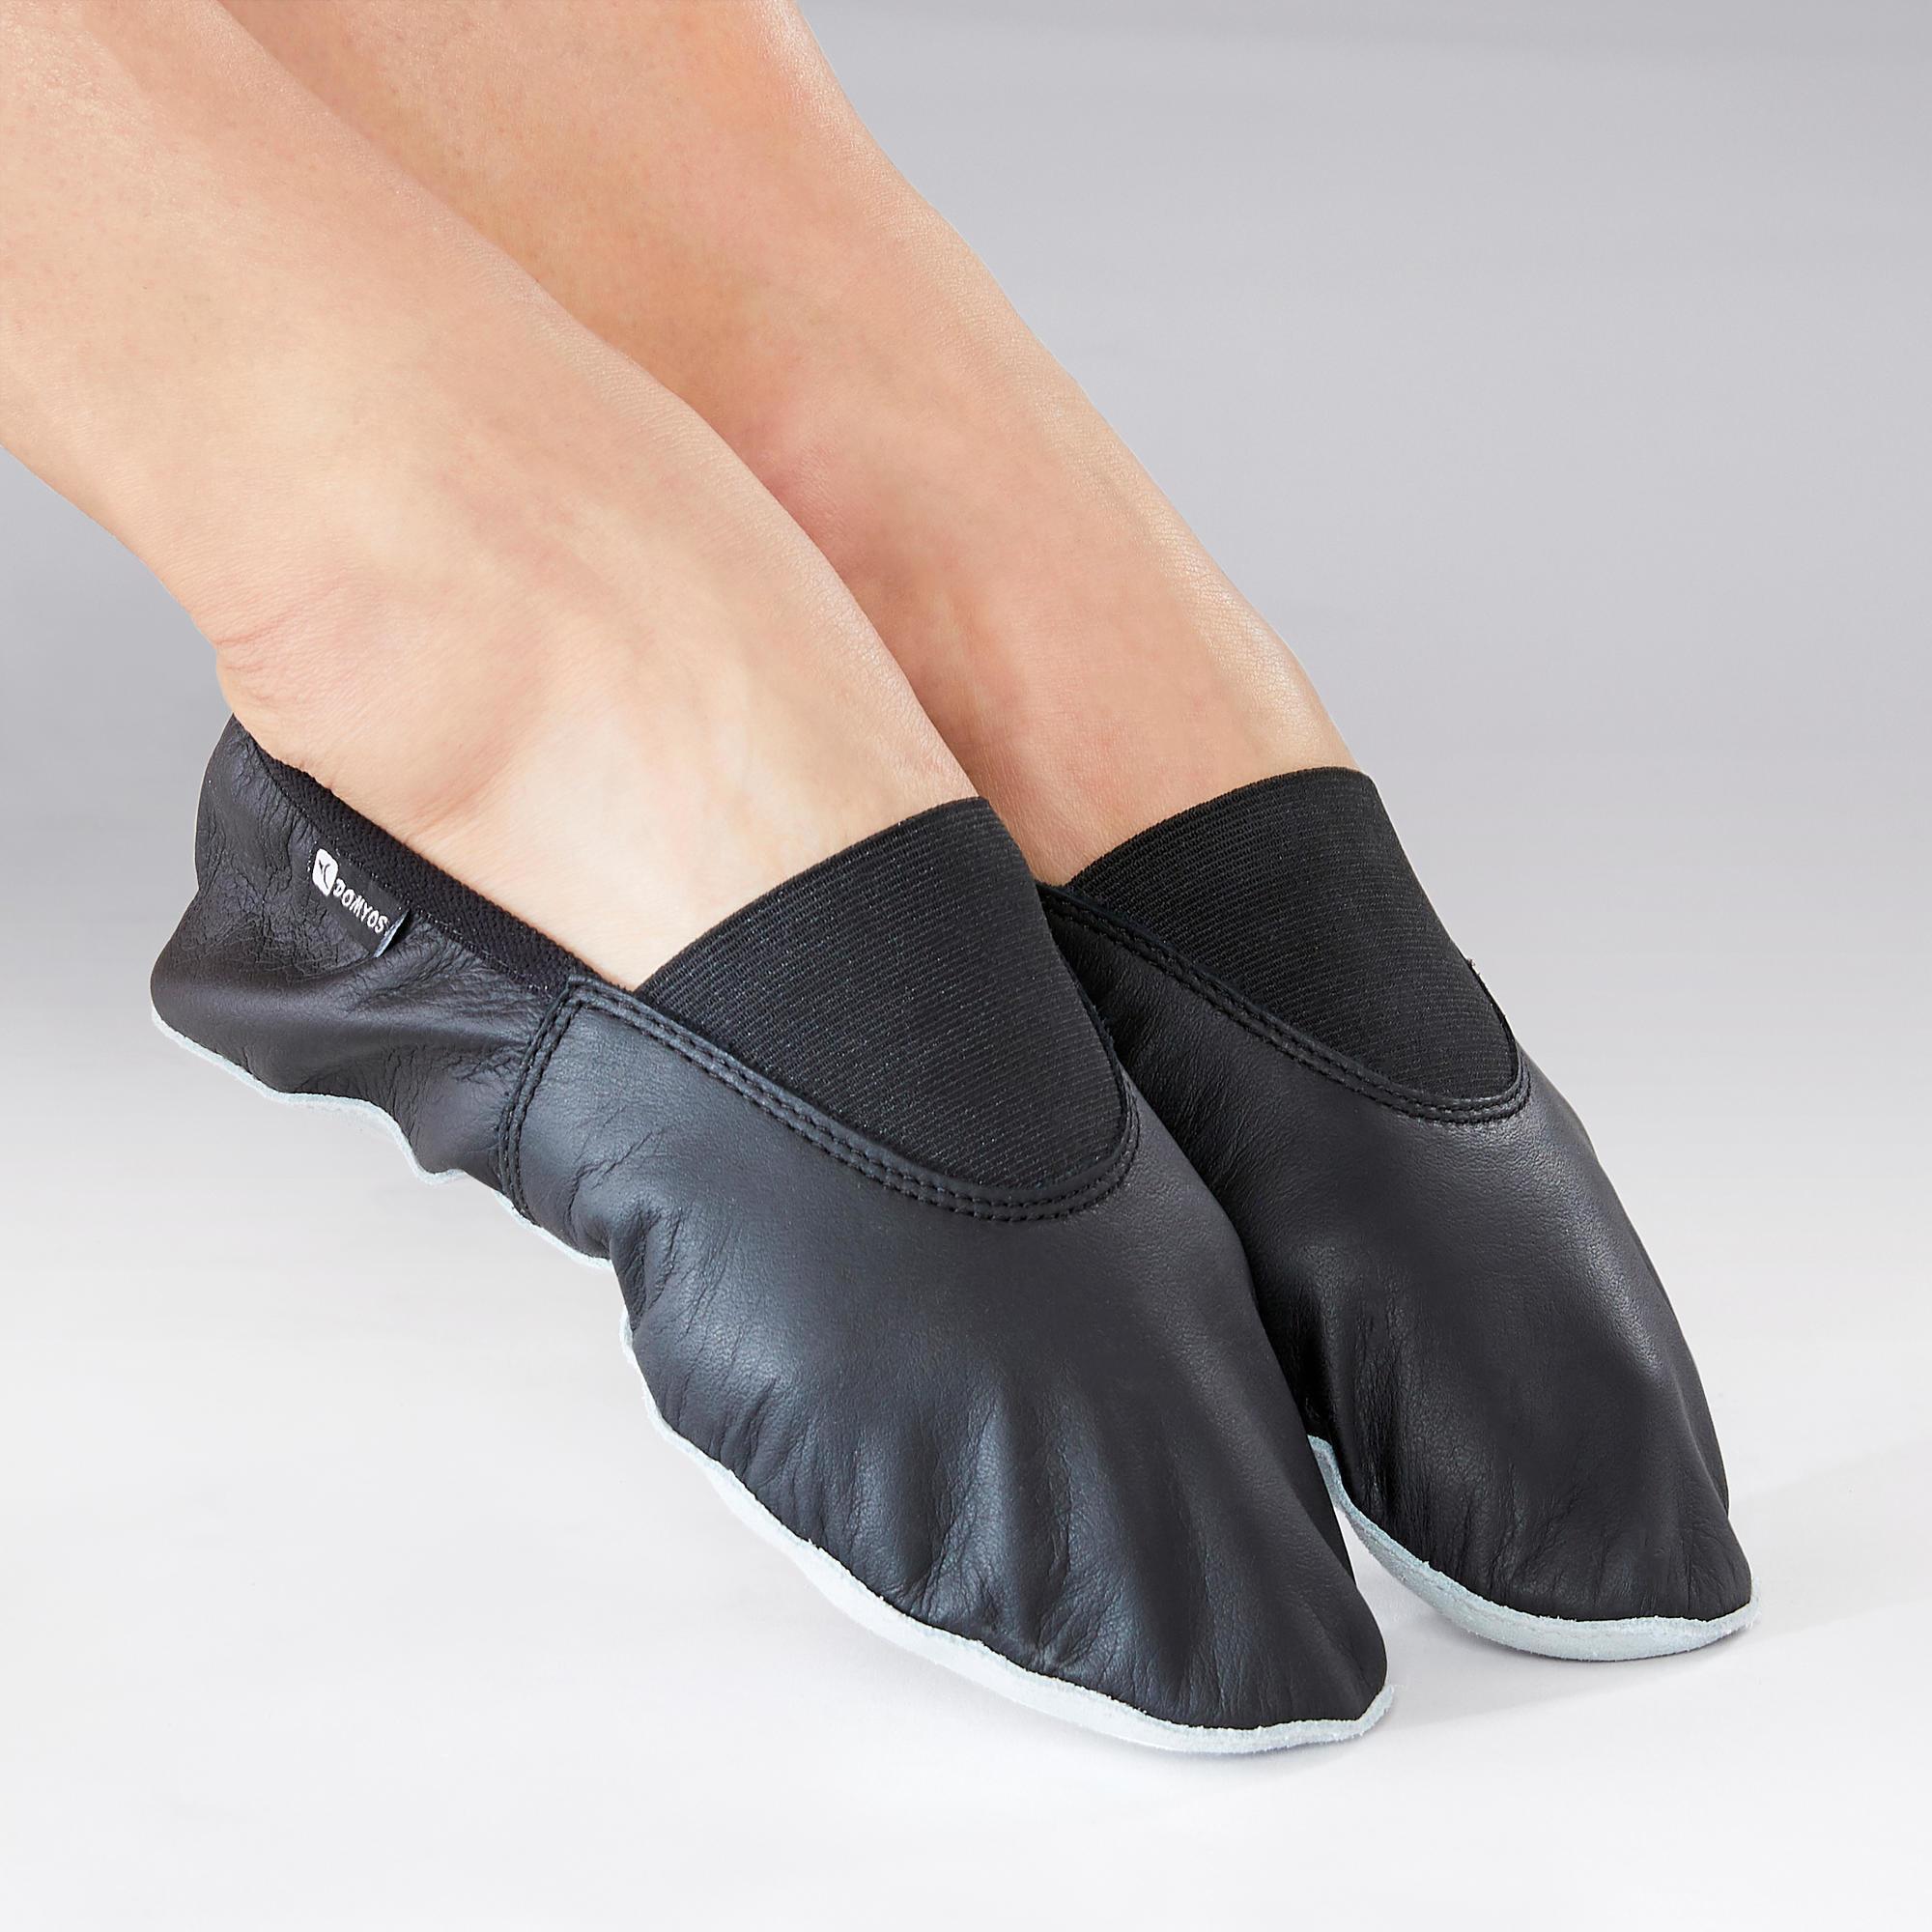 decathlon dance shoes